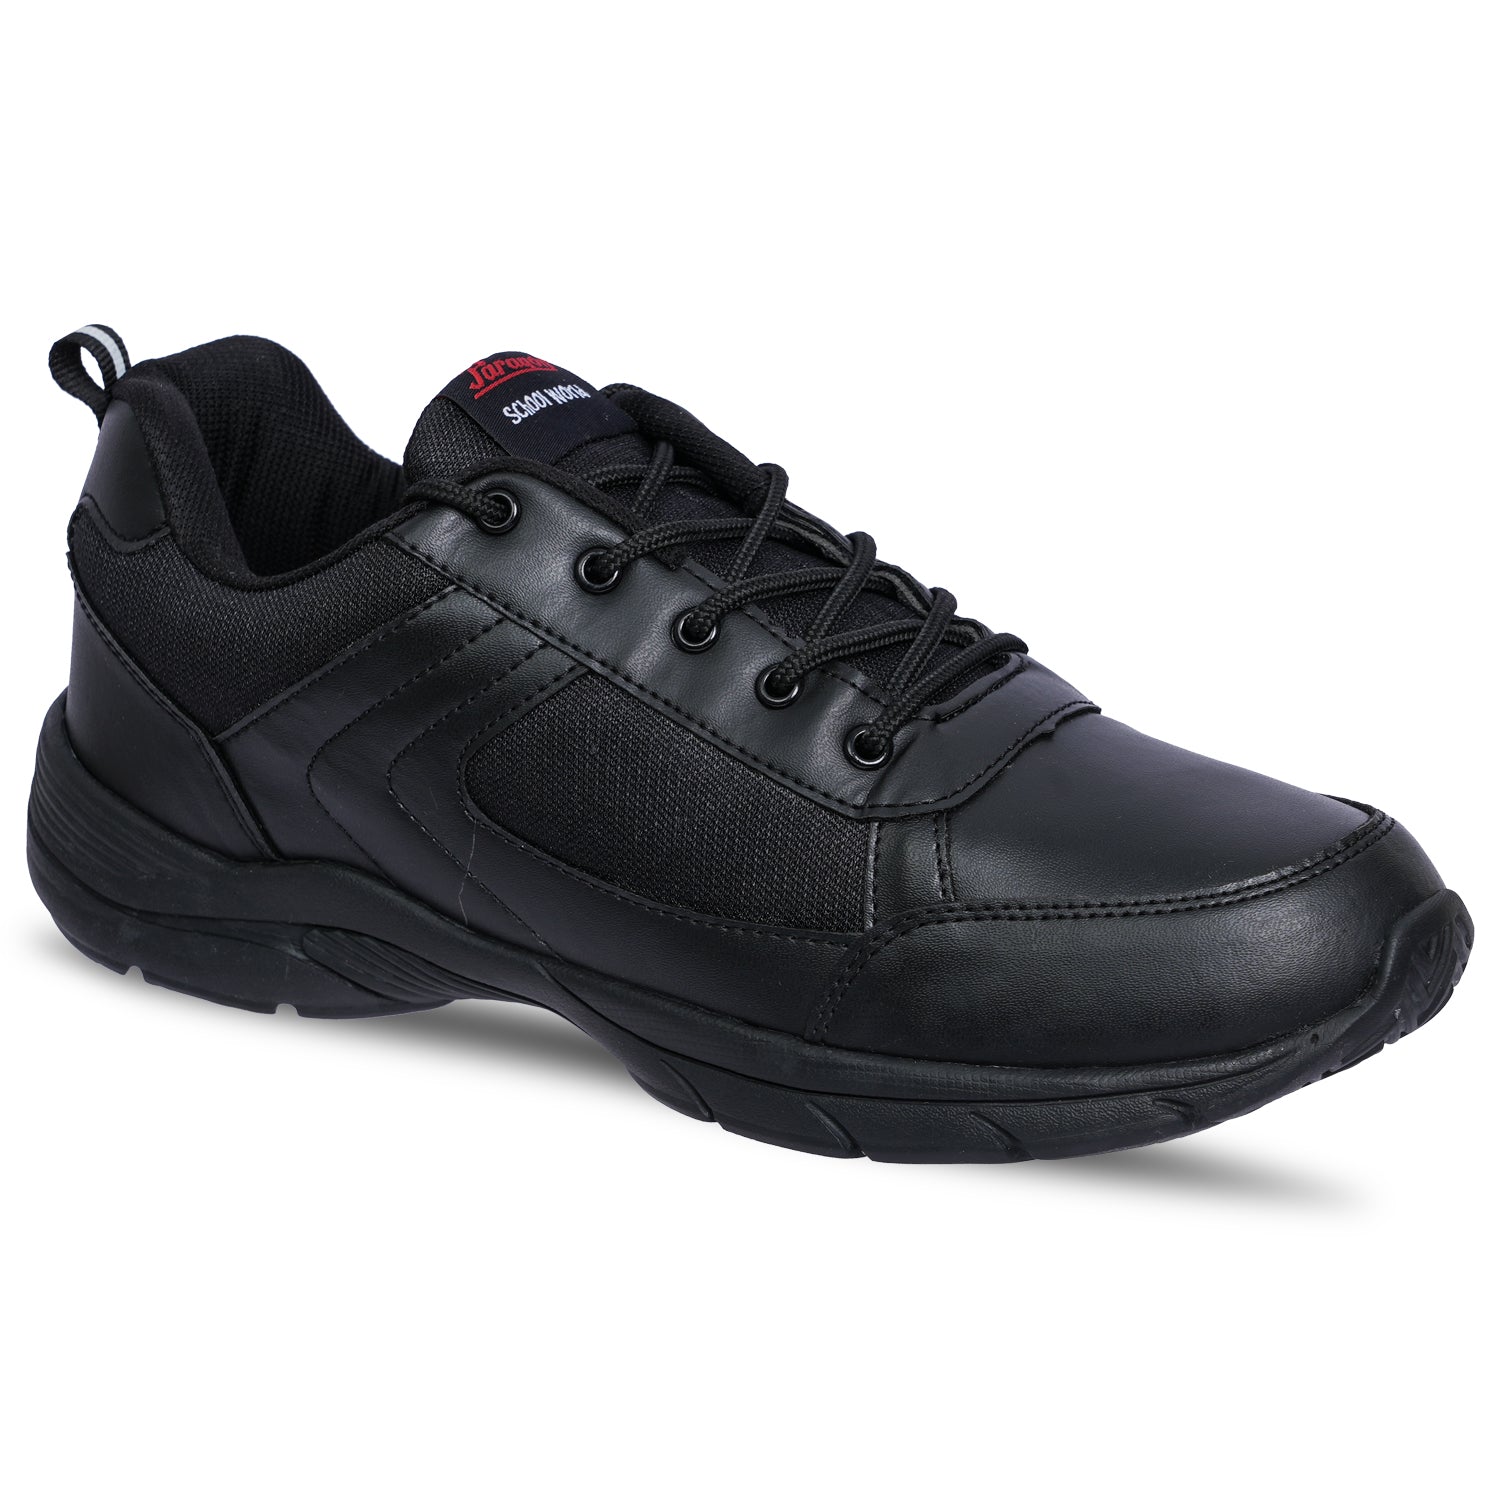 Khadim Black Sneakers School Shoe for Boys (2.5-5.5 yrs)